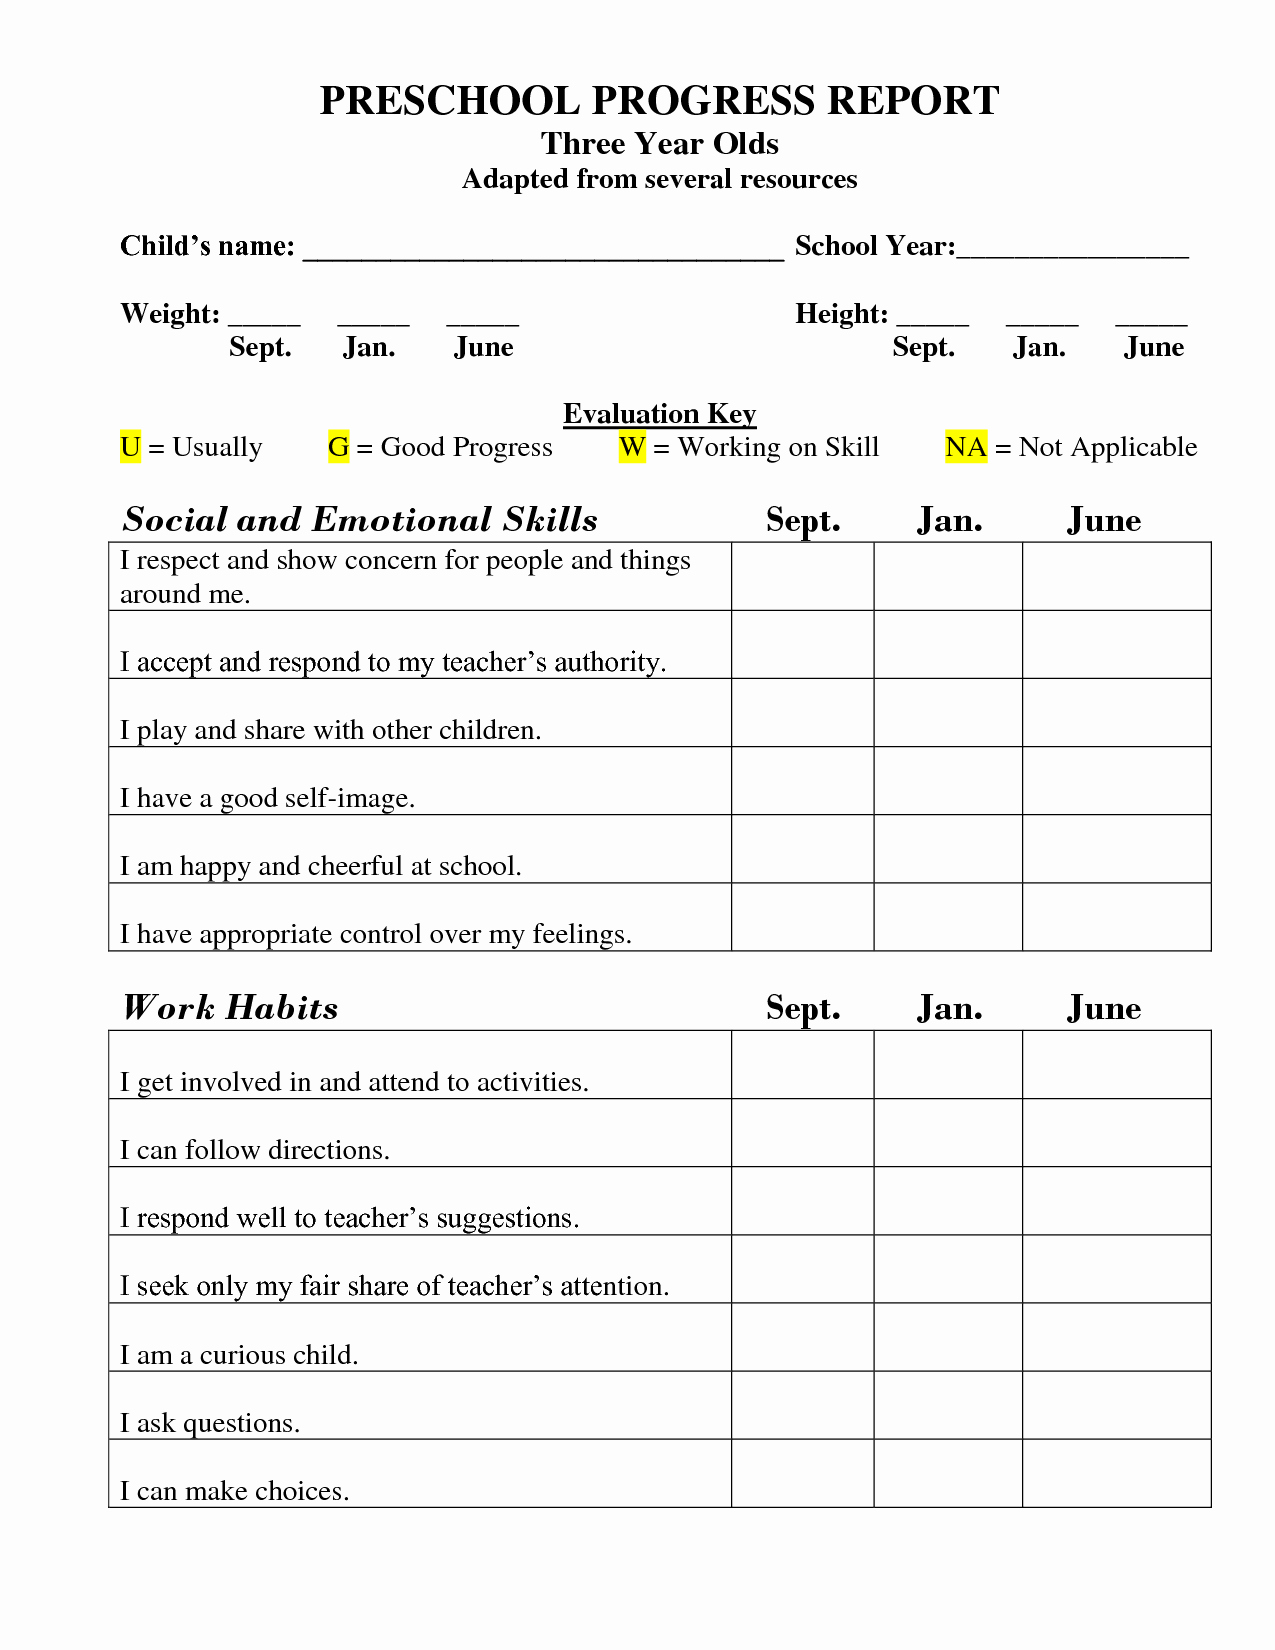 Preschool Progress Reports Templates Fresh Printable Preschool Progress Report Template Kg